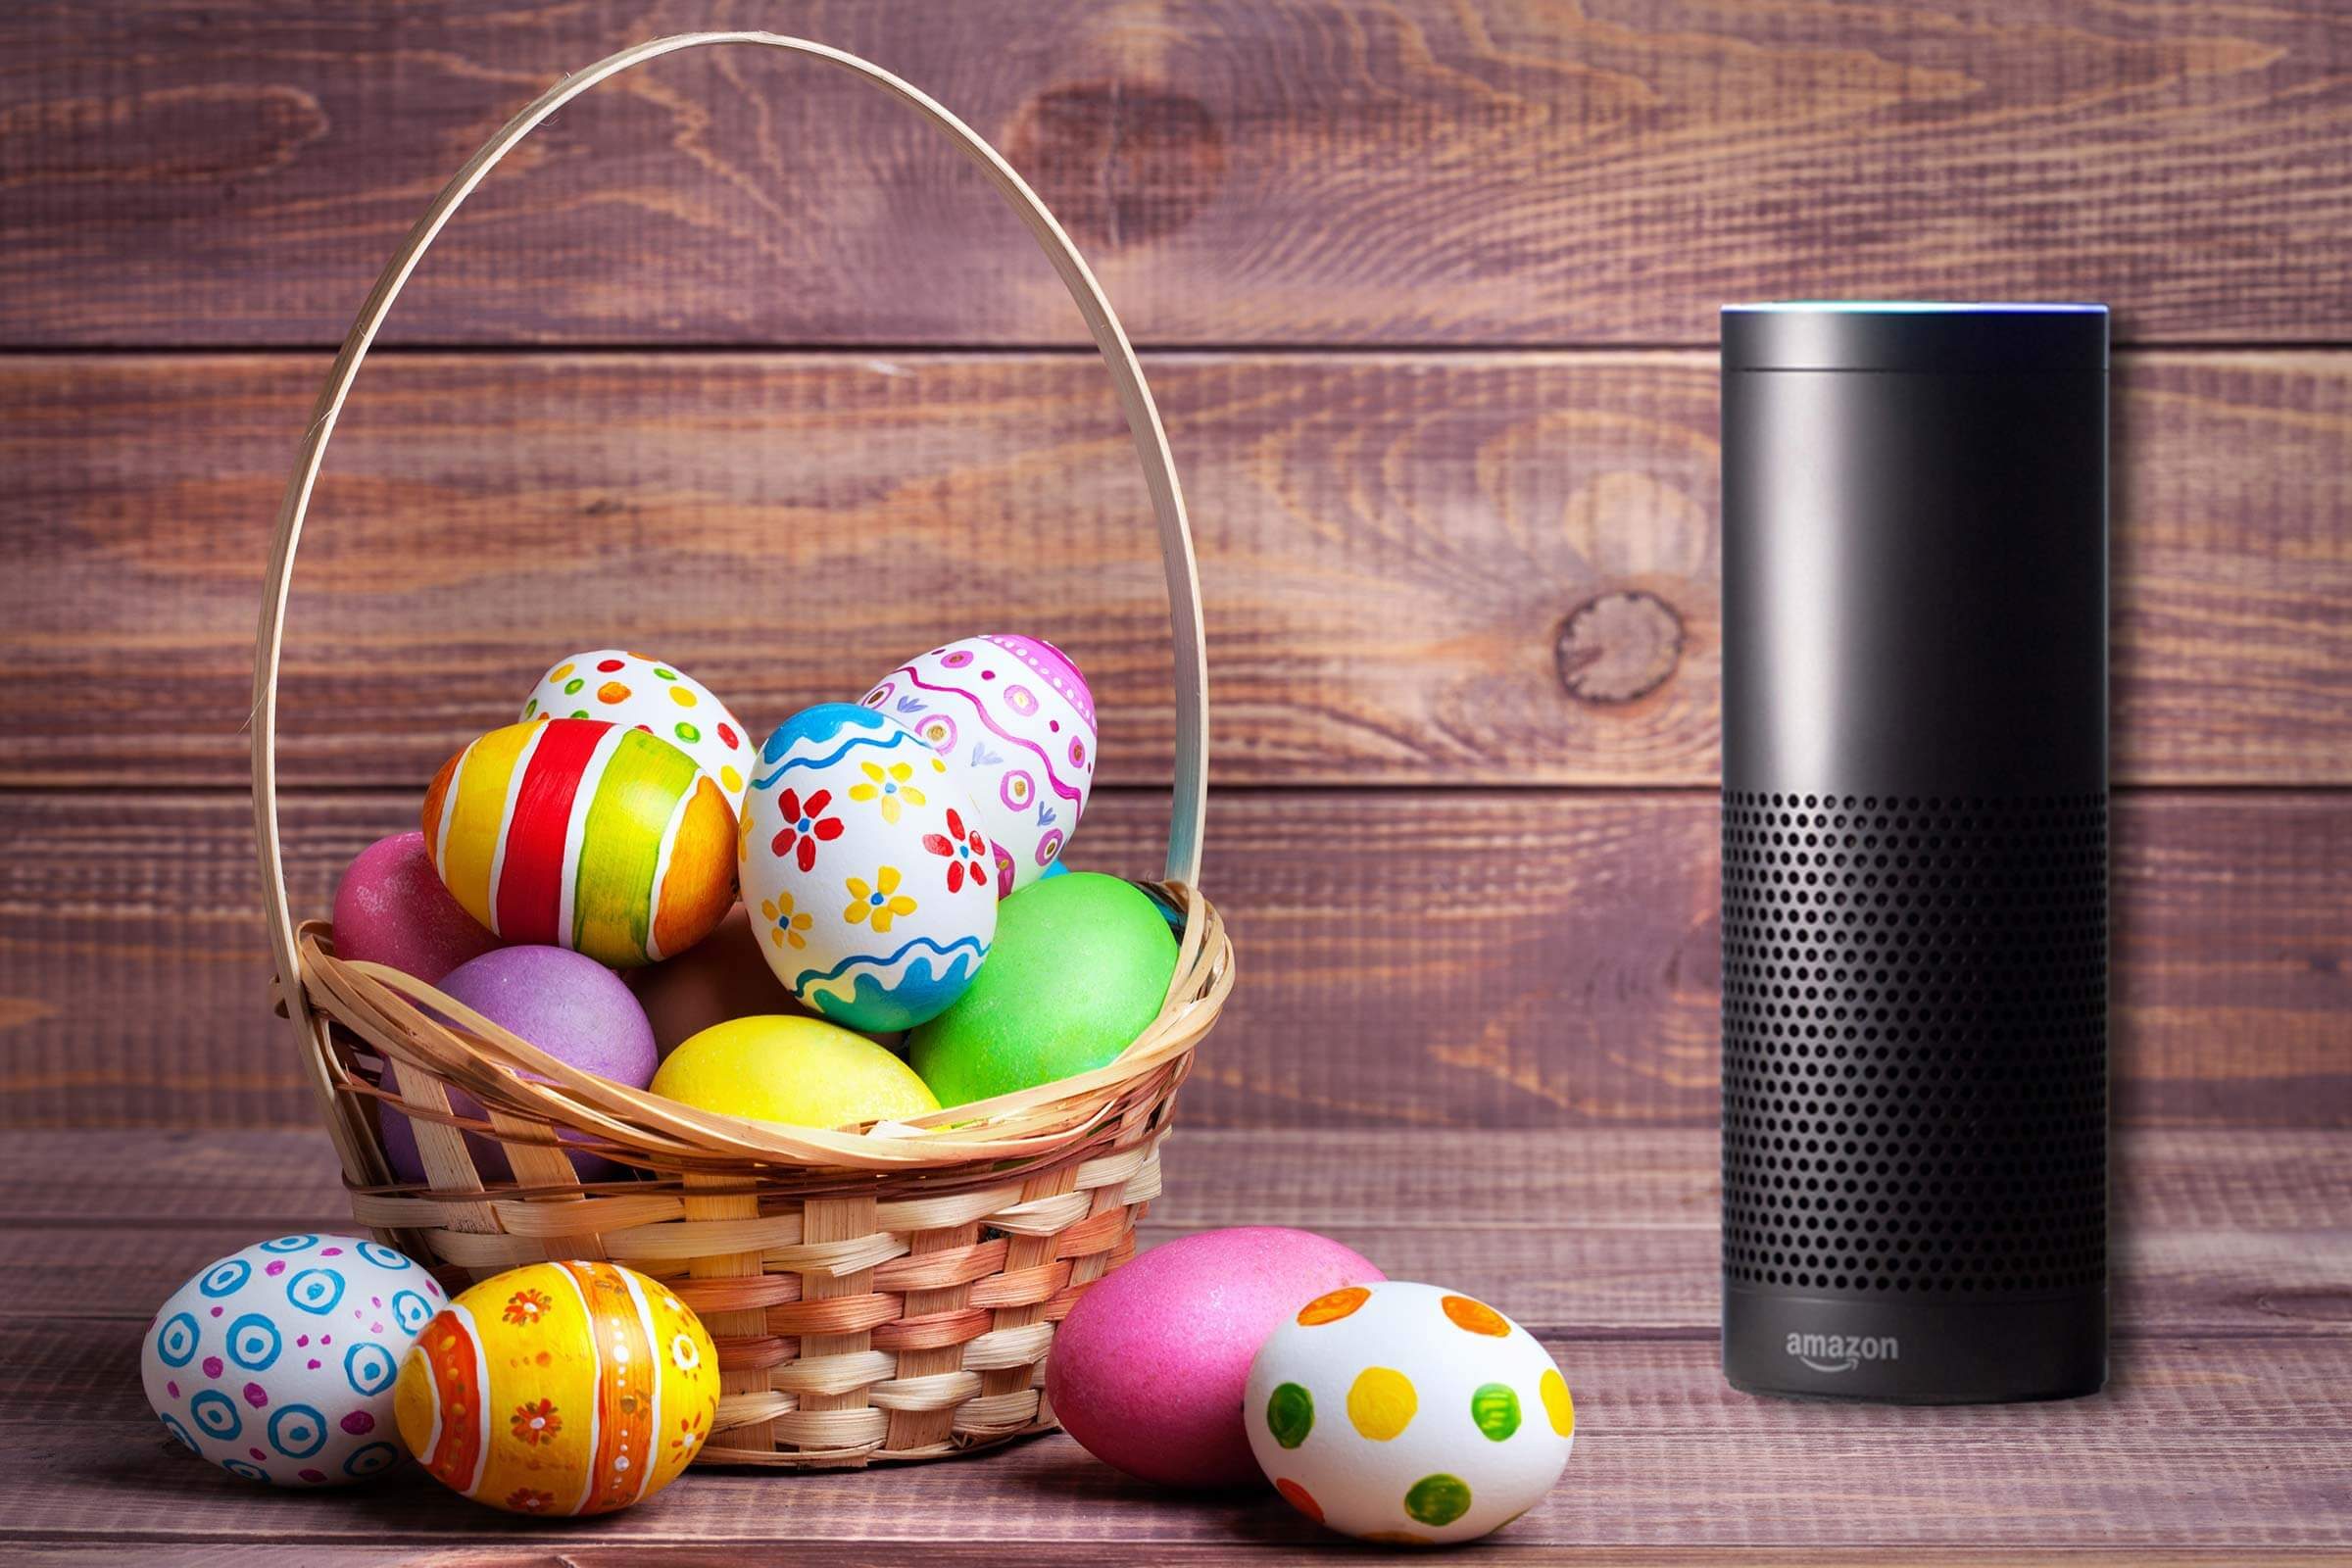 24 of Google's Best Easter Eggs - Smart Traffic